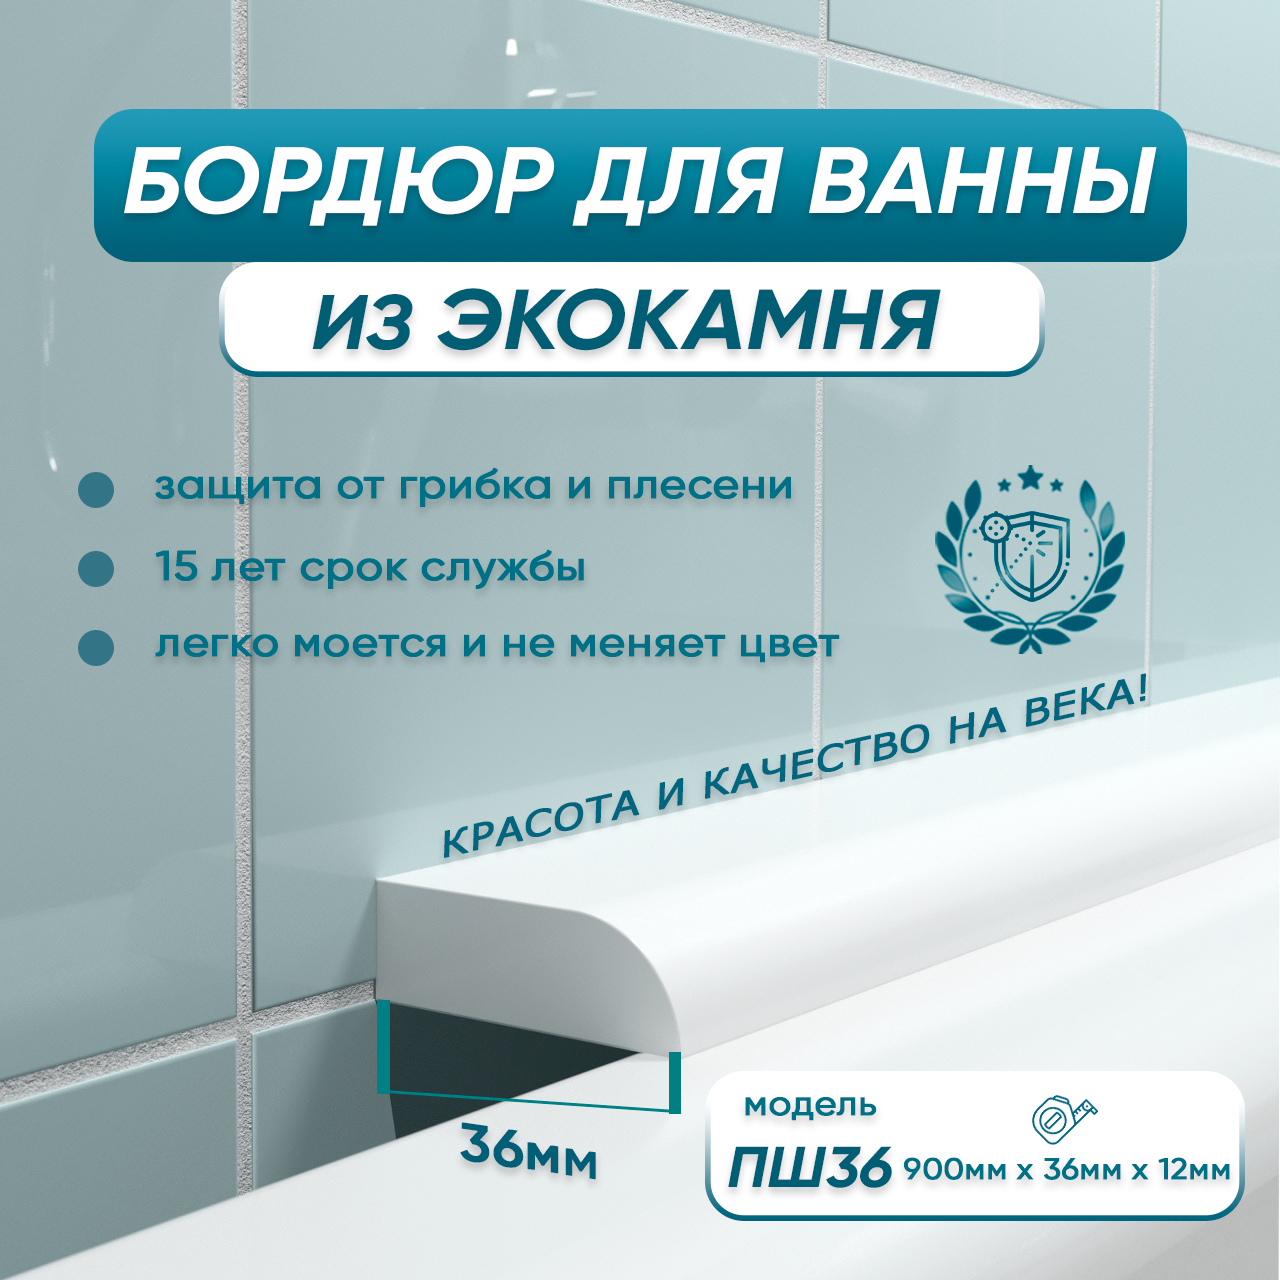 Акриловый плинтус бордюр для ванны BNV ПШ36 90 сантиметров, белый цвет, глянцевая поверхность